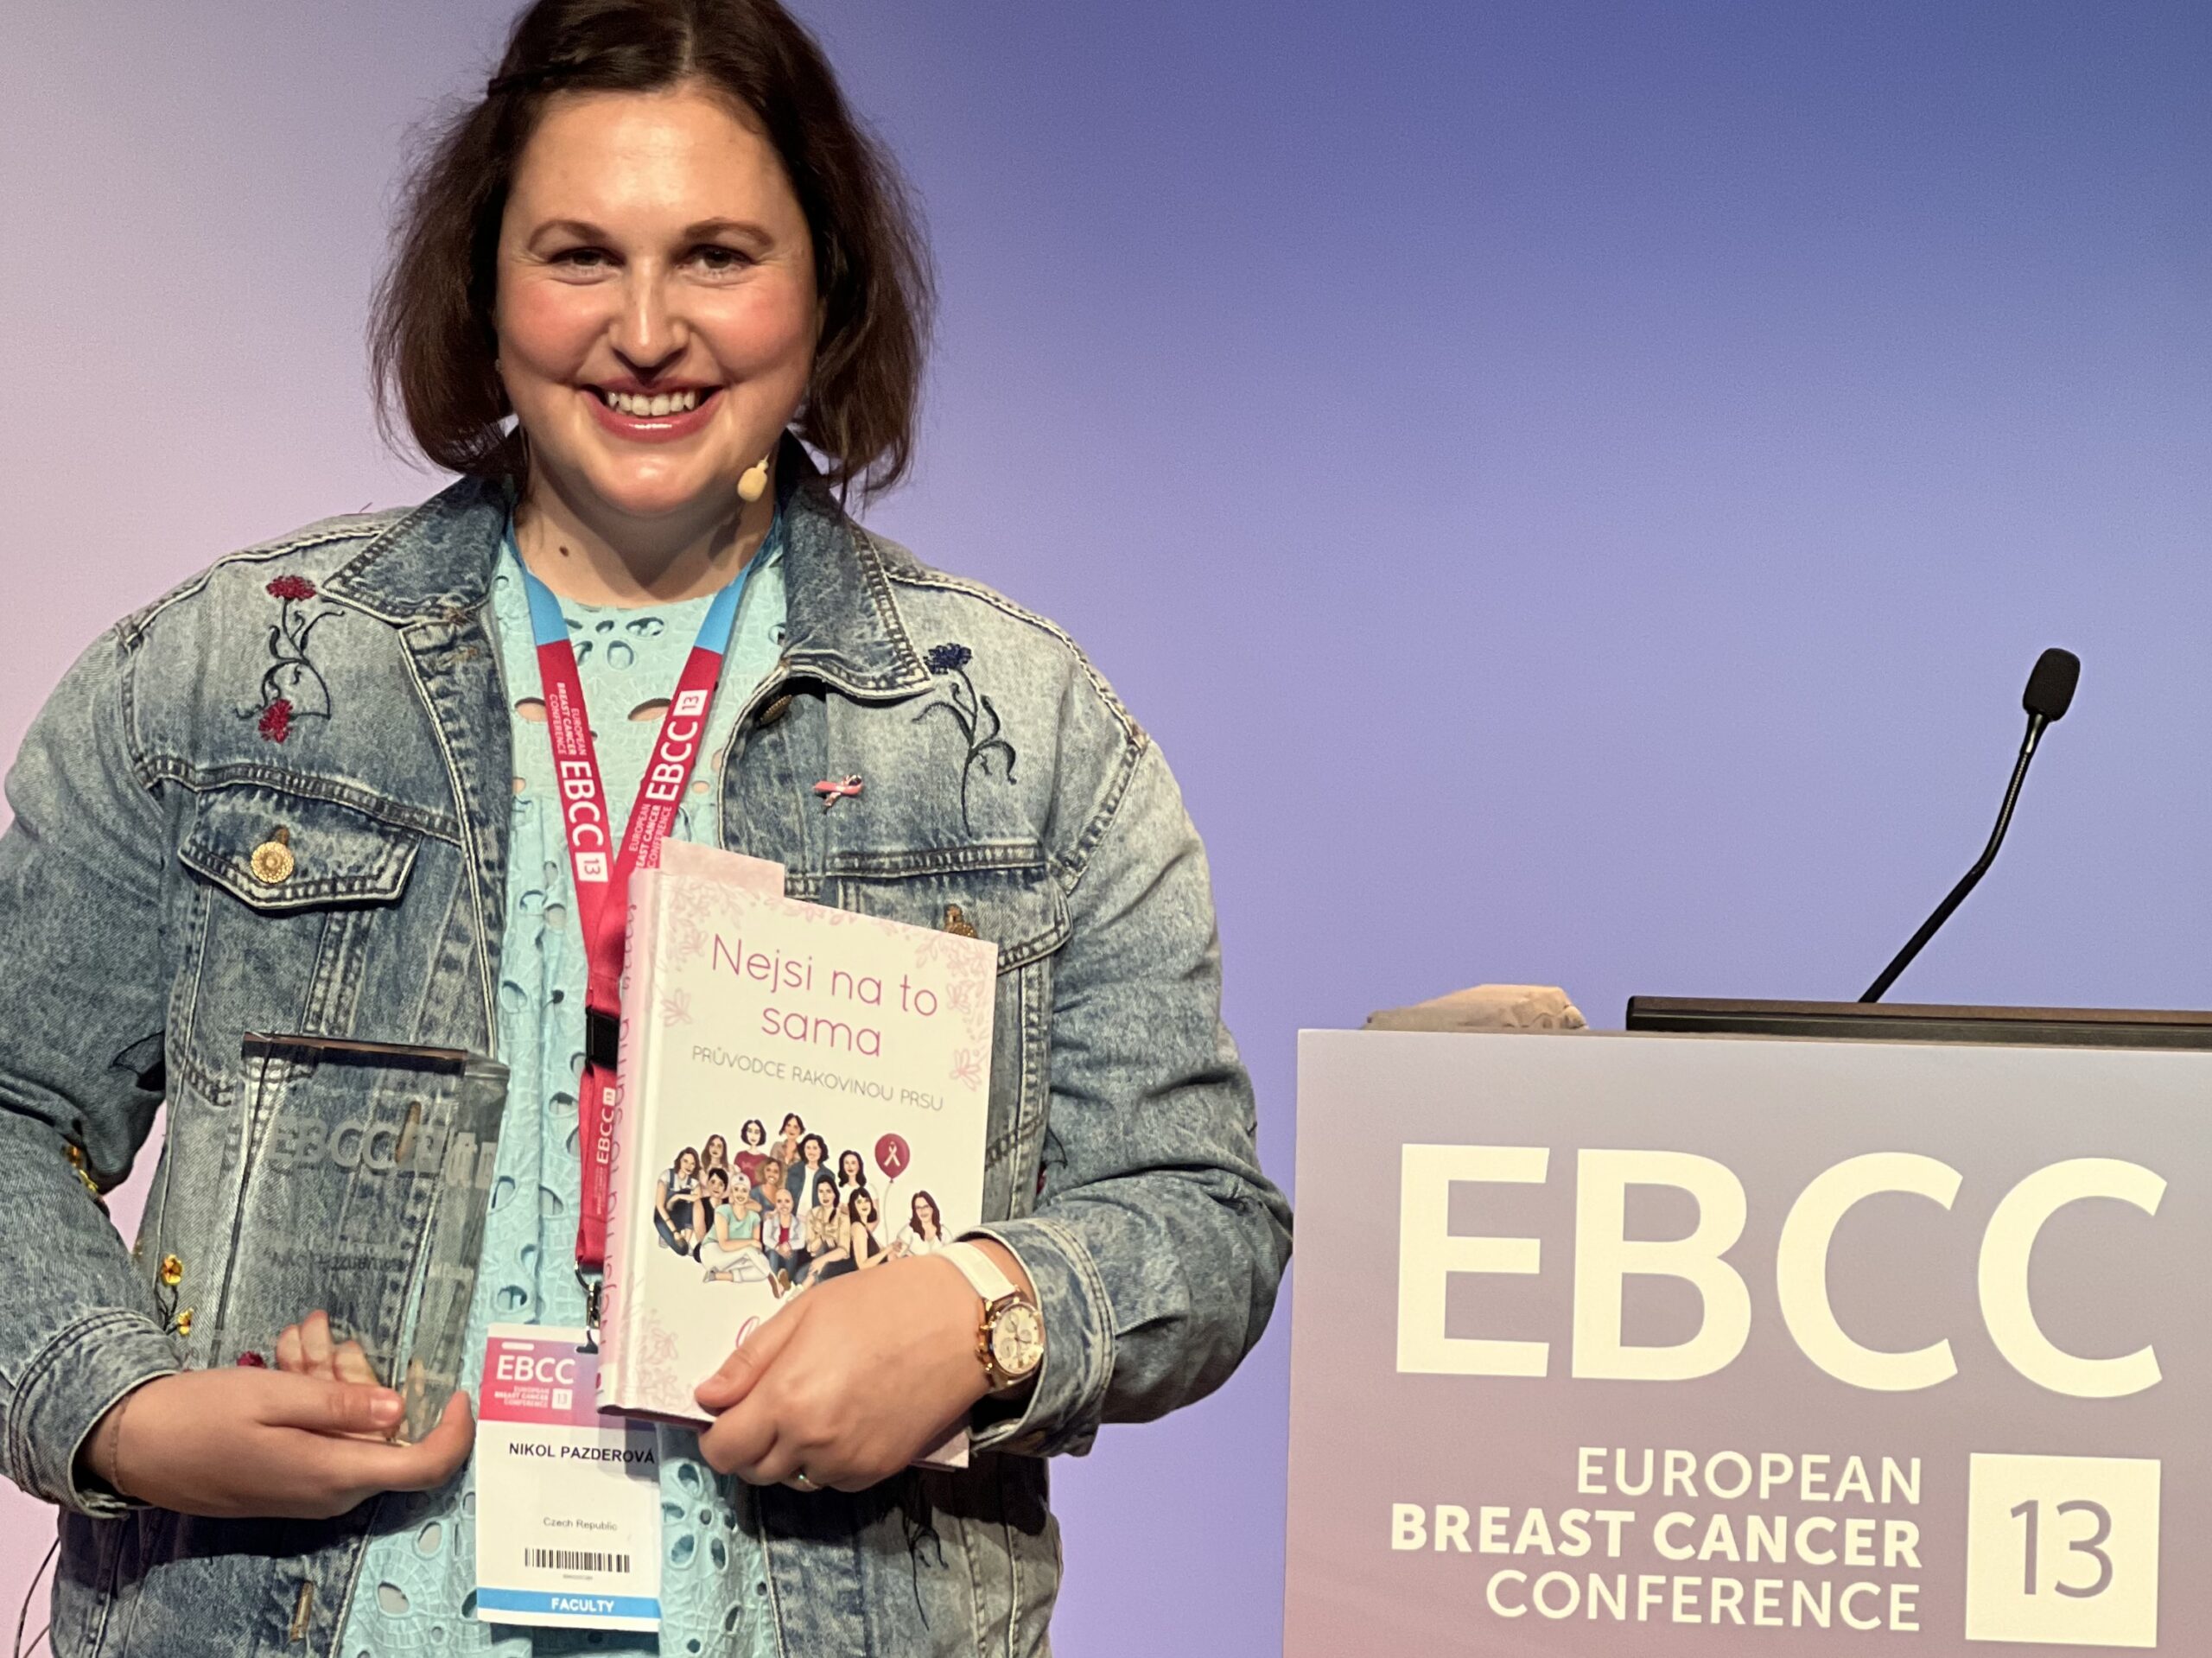 European Breast Cancer Conference 2022 přinesla mezinárodní ocenění pro Bellisky a nové poznatky ze studií